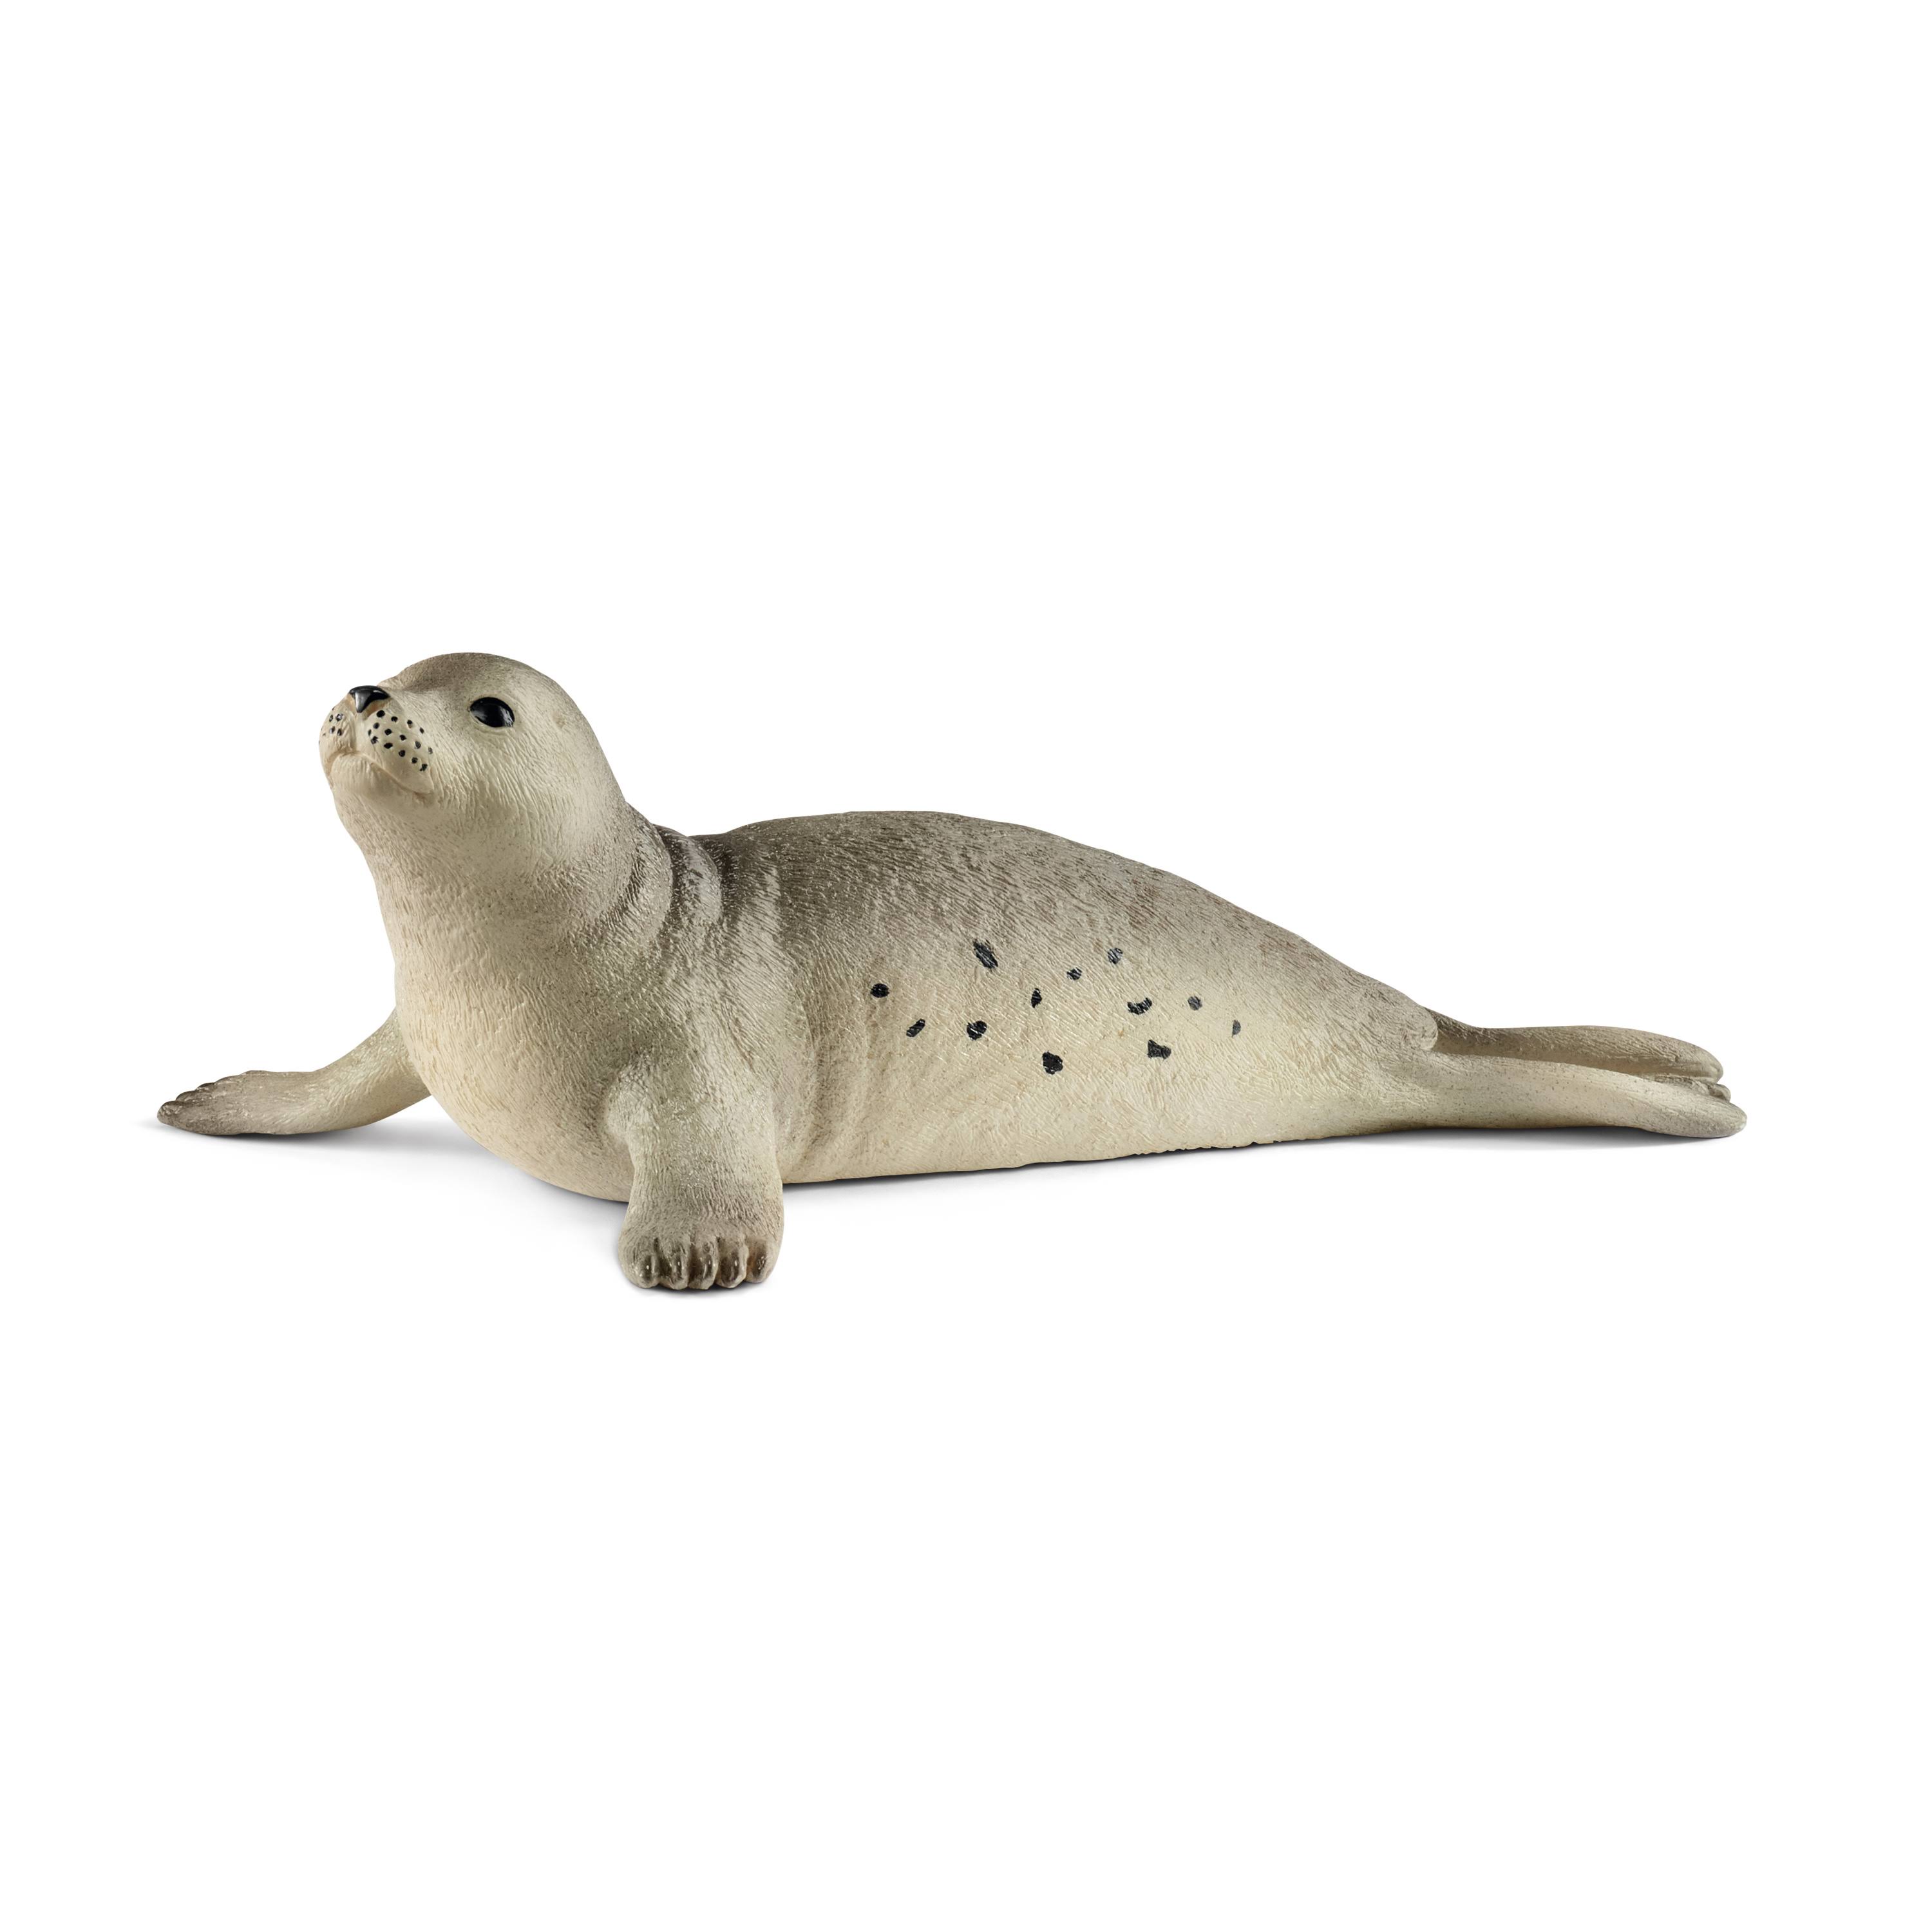 Schleich 14801 Seal Toy Figure